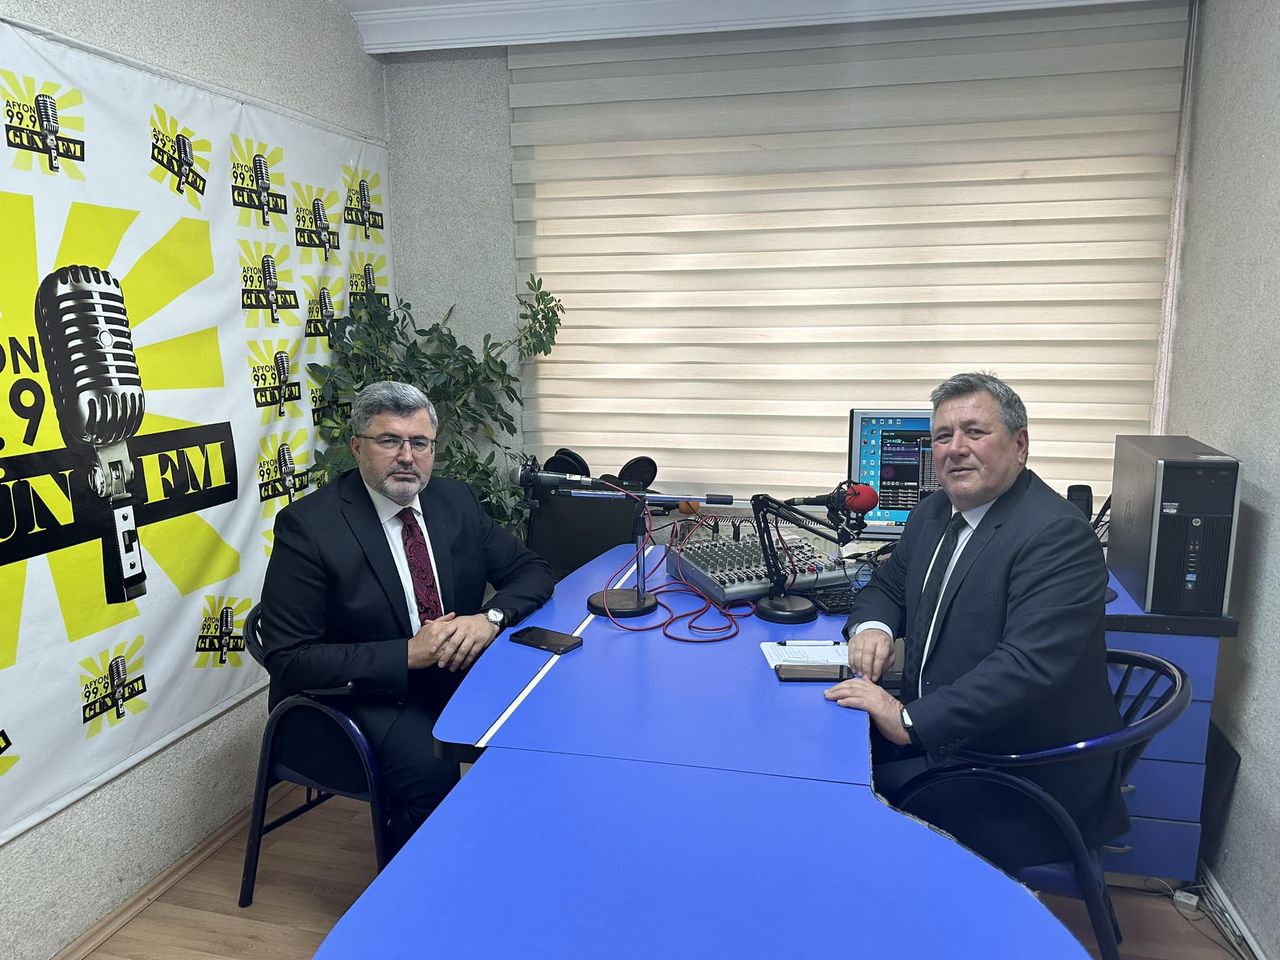 AK Partili Milletvekili Ali Özkaya, Radyo Programında Görüşlerini Paylaştı ve Radyo İstasyonu Yöneticisiyle Görüştü.